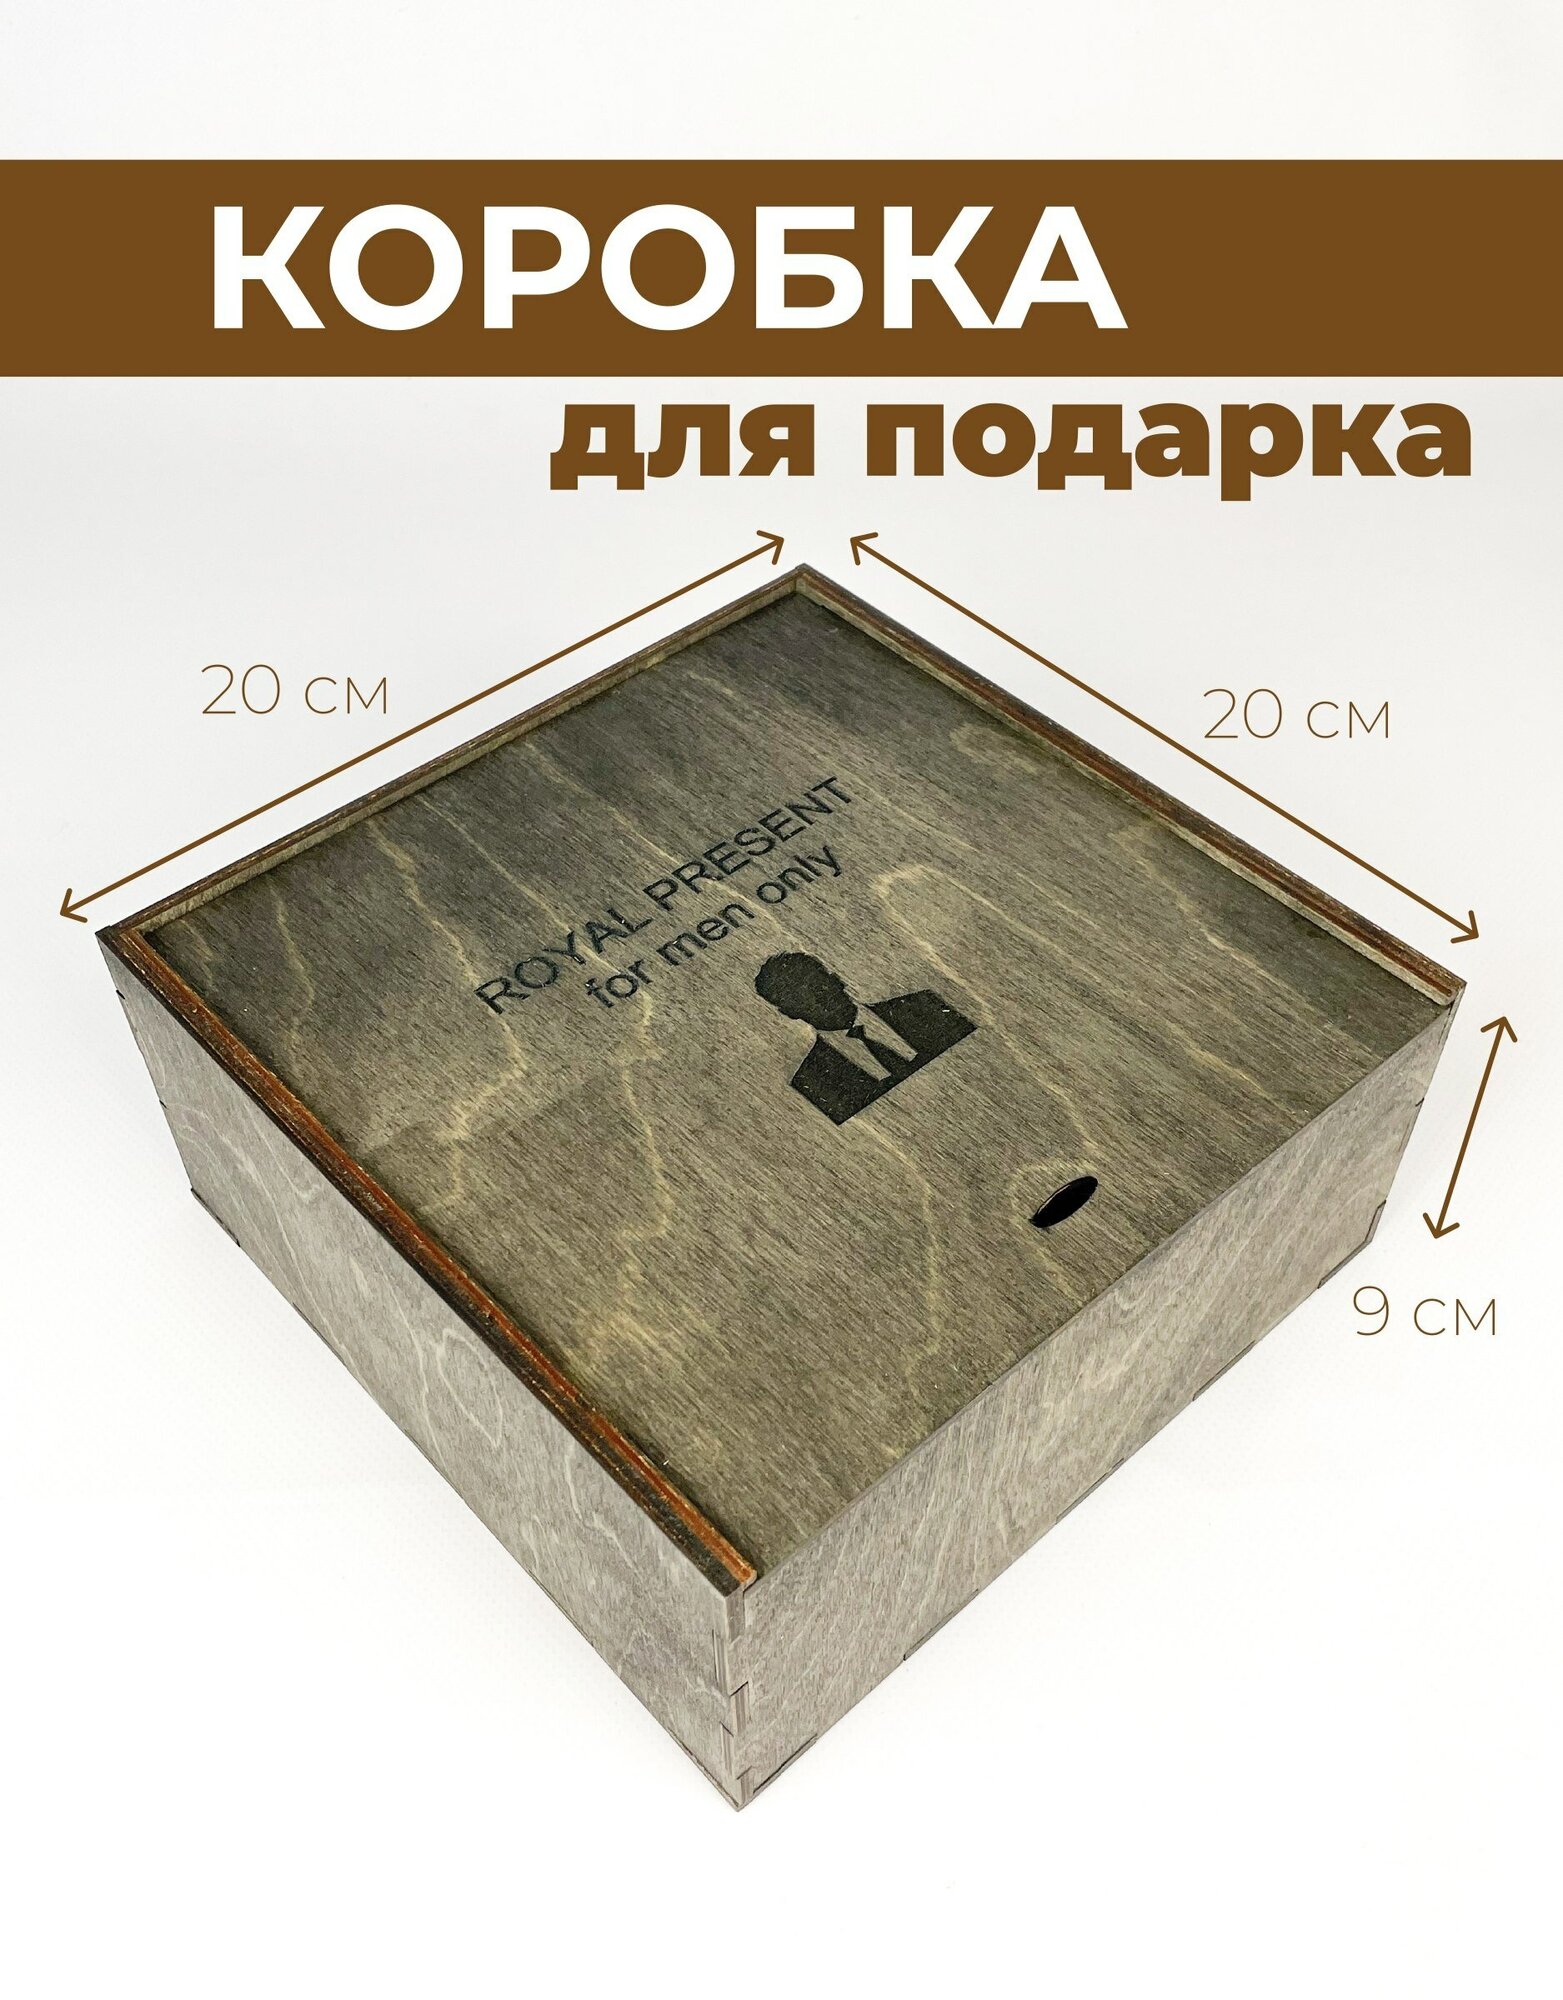 Деревянная подарочная коробка с крышкой / Упаковка для подарка день рождения, праздник (Черный рисунок)